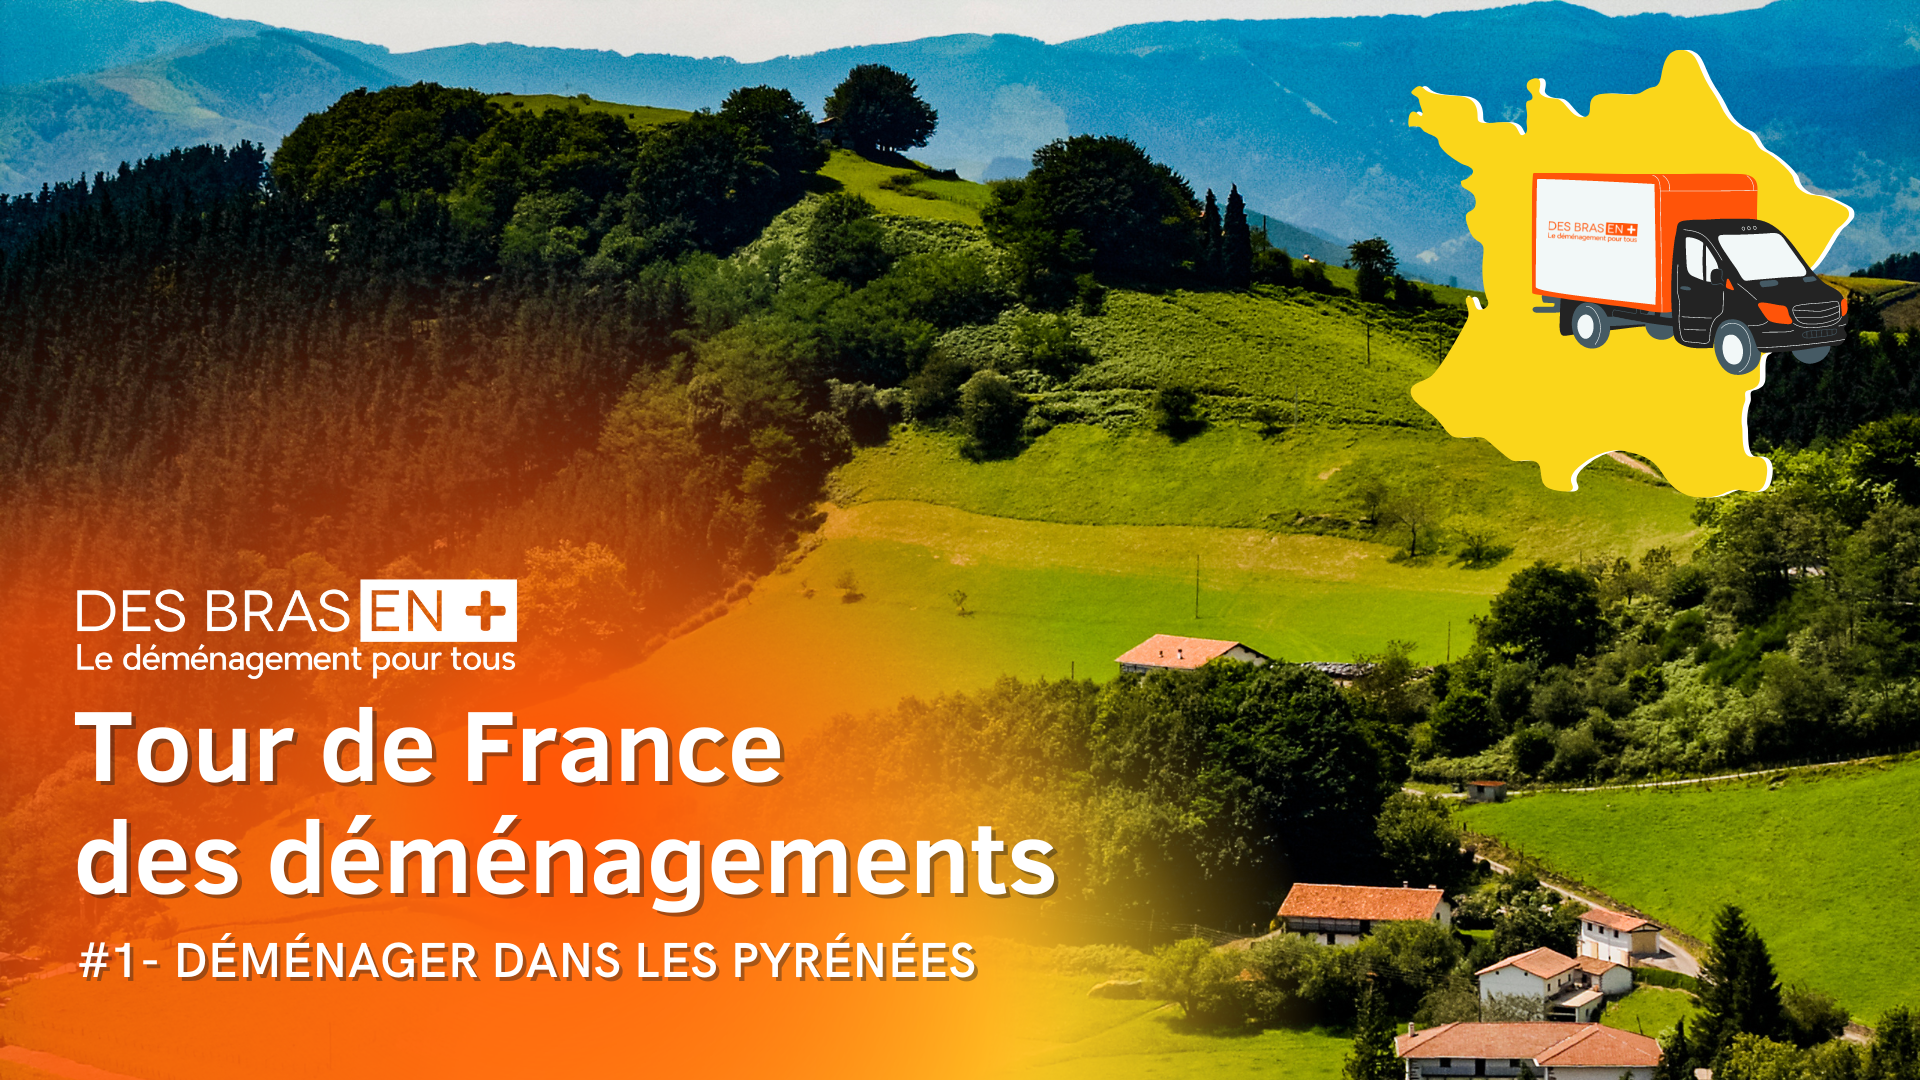 Tour de France des déménagements : déménager dans les Pyrénées